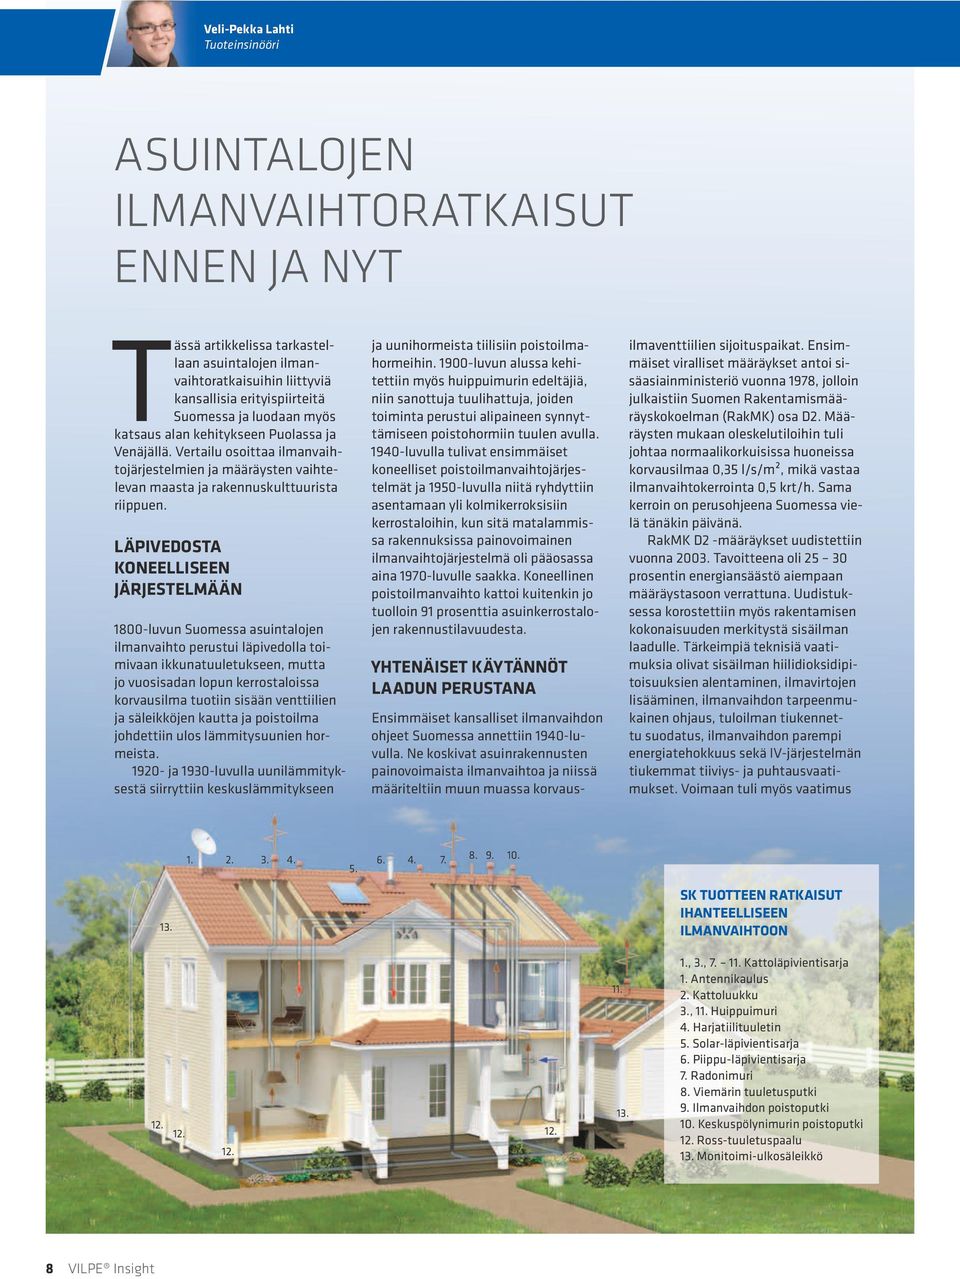 Läpivedosta koneelliseen järjestelmään 1800-luvun Suomessa asuintalojen ilmanvaihto perustui läpivedolla toimivaan ikkunatuuletukseen, mutta jo vuosisadan lopun kerrostaloissa korvausilma tuotiin